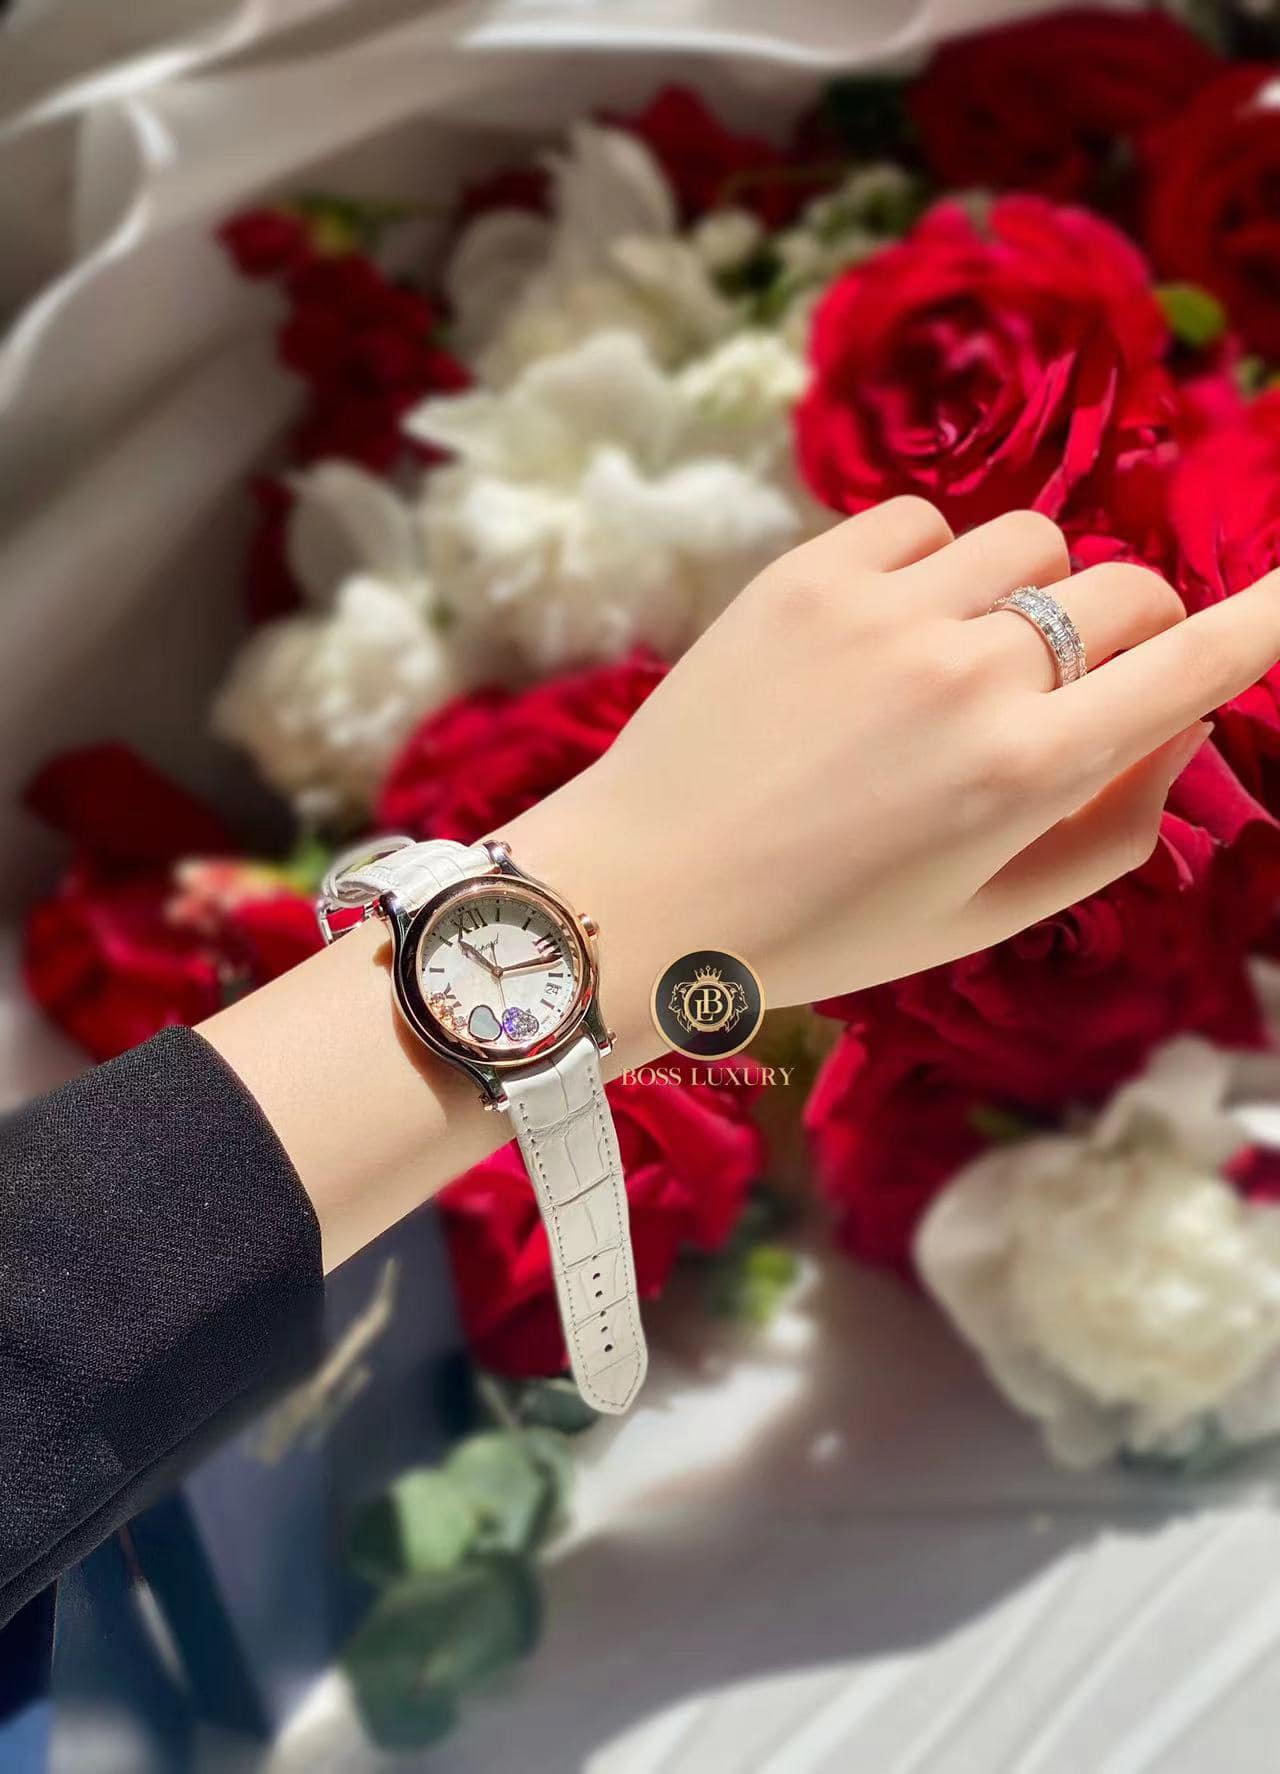 Boss Luxury - Địa chỉ mua đồng hồ Chopard chính hãng tại Việt Nam